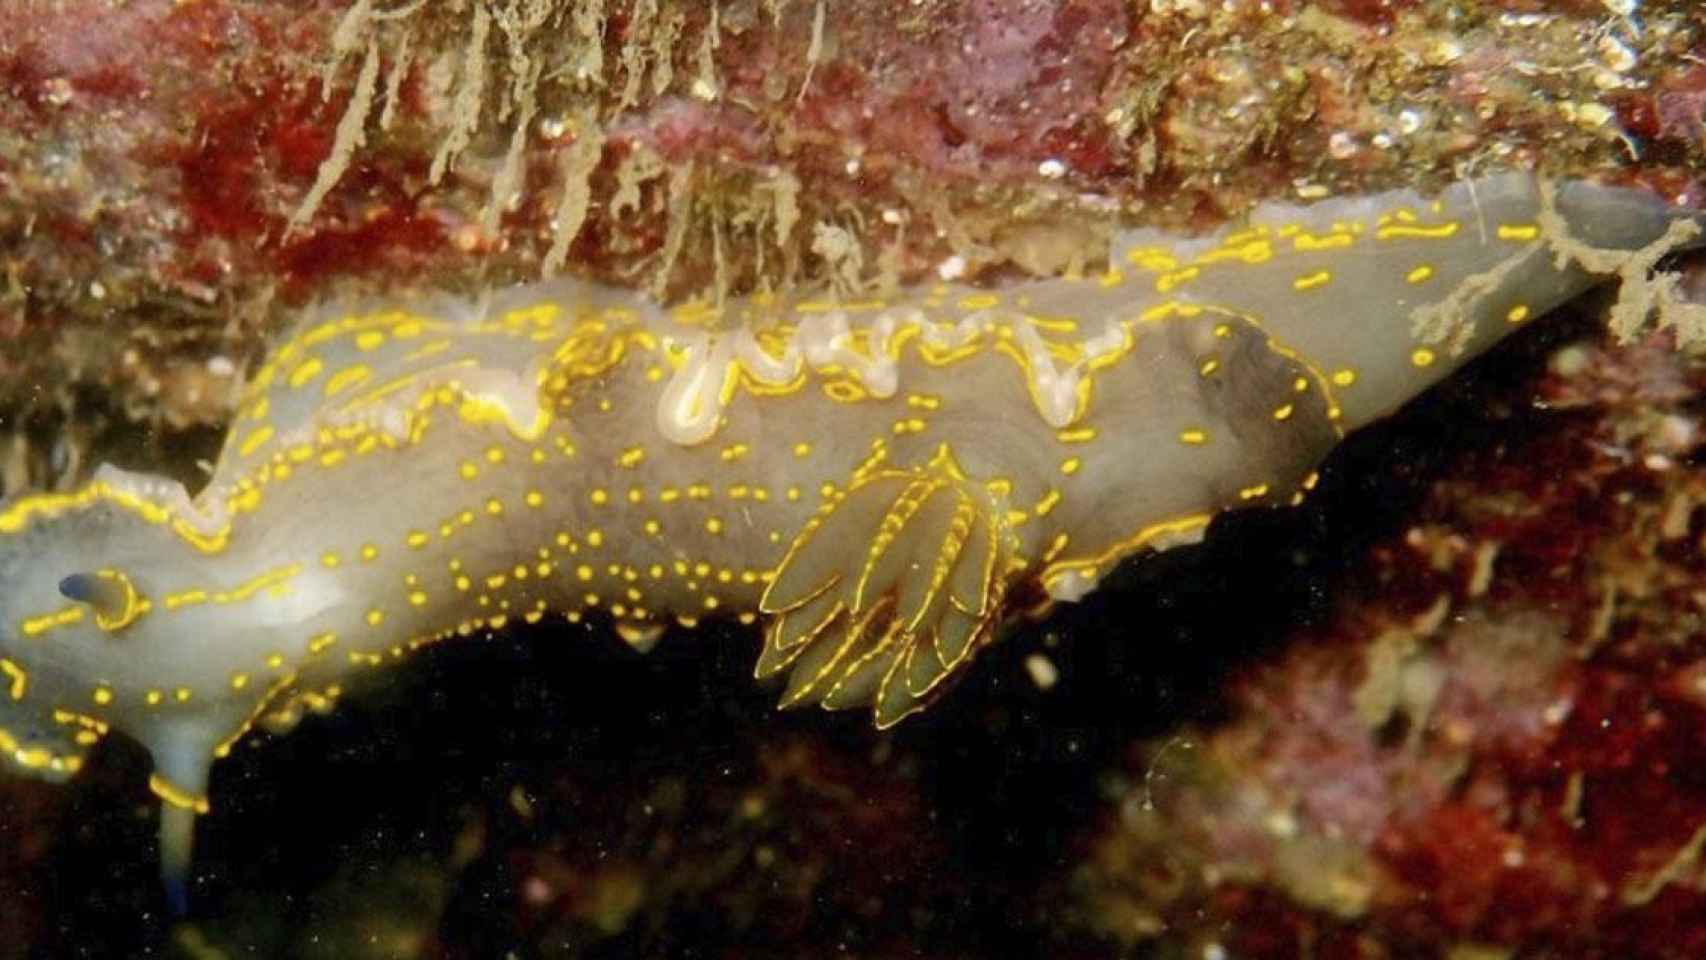 Una de las especies marinas identificadas en la playa artificial del Fòrum / UB